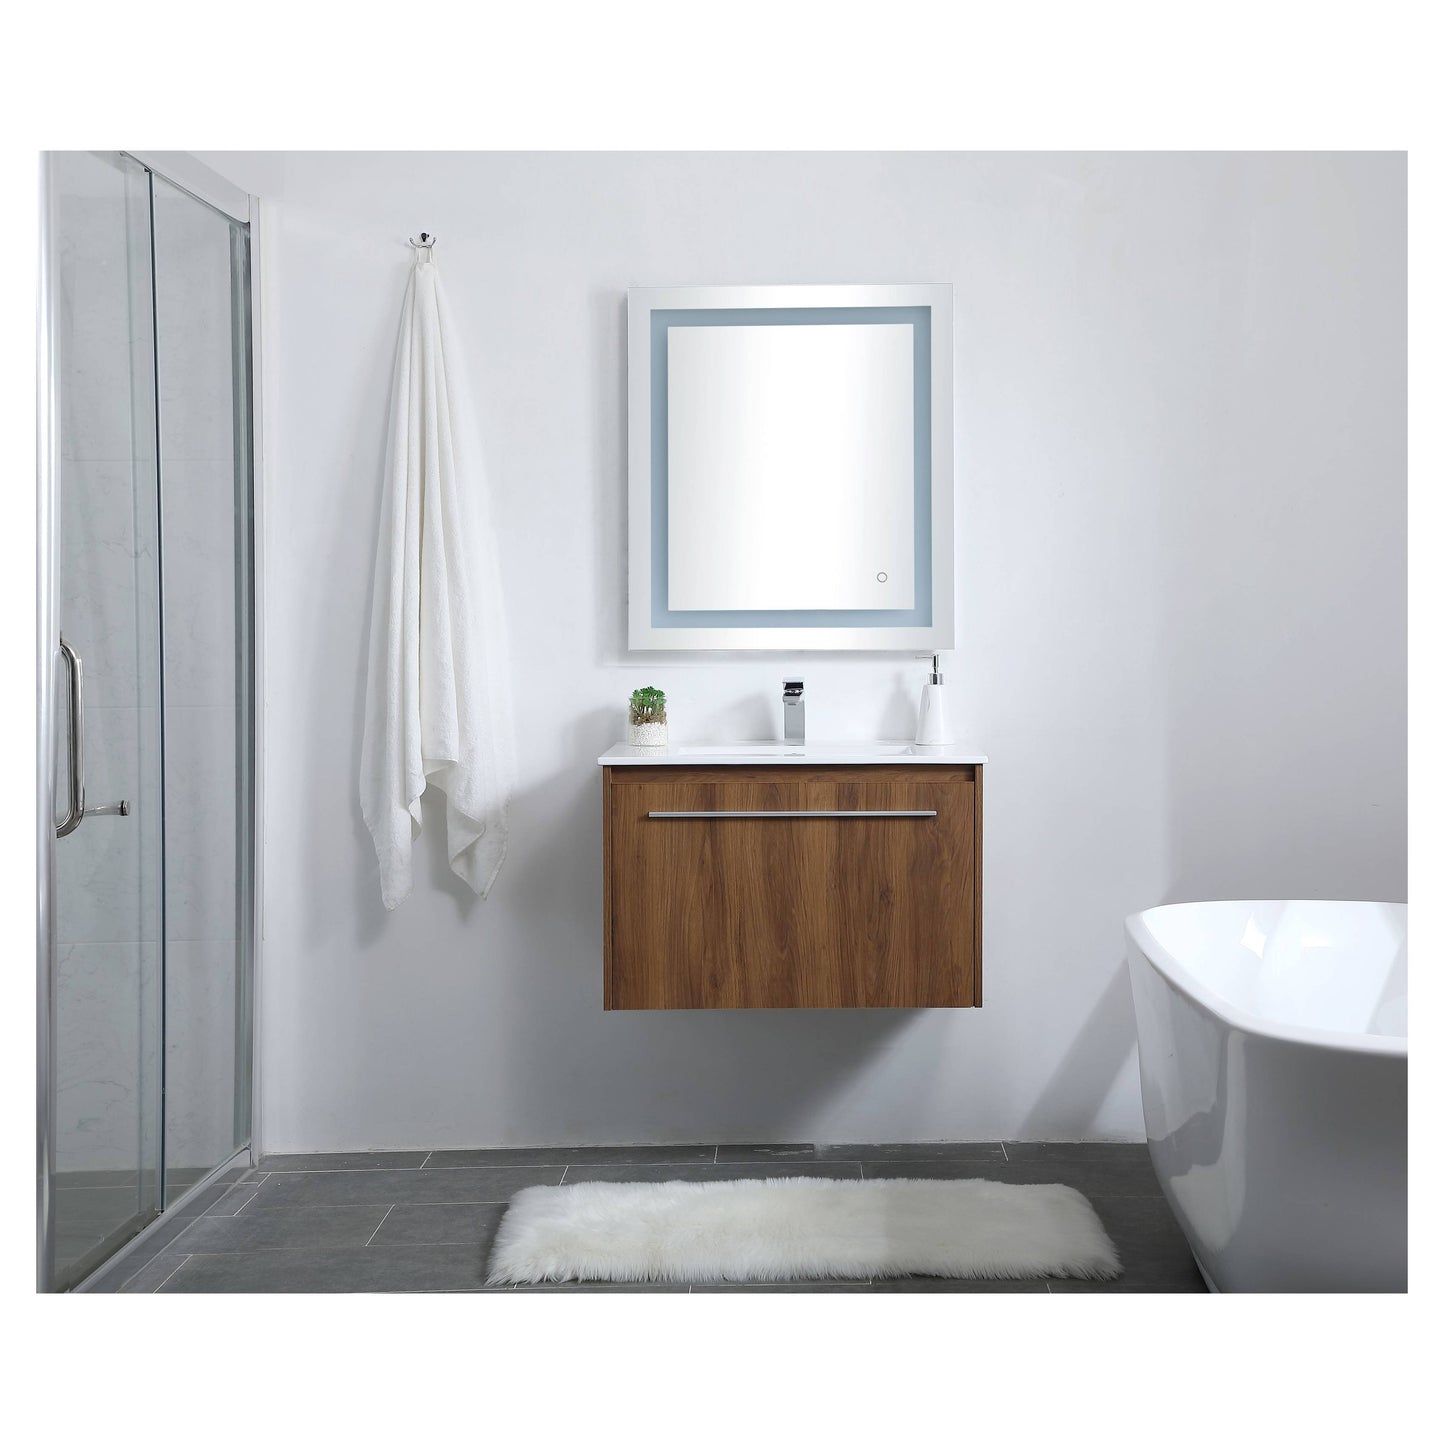 VF45030WB 30" Single Bathroom Floating Vanity in Walnut Brown